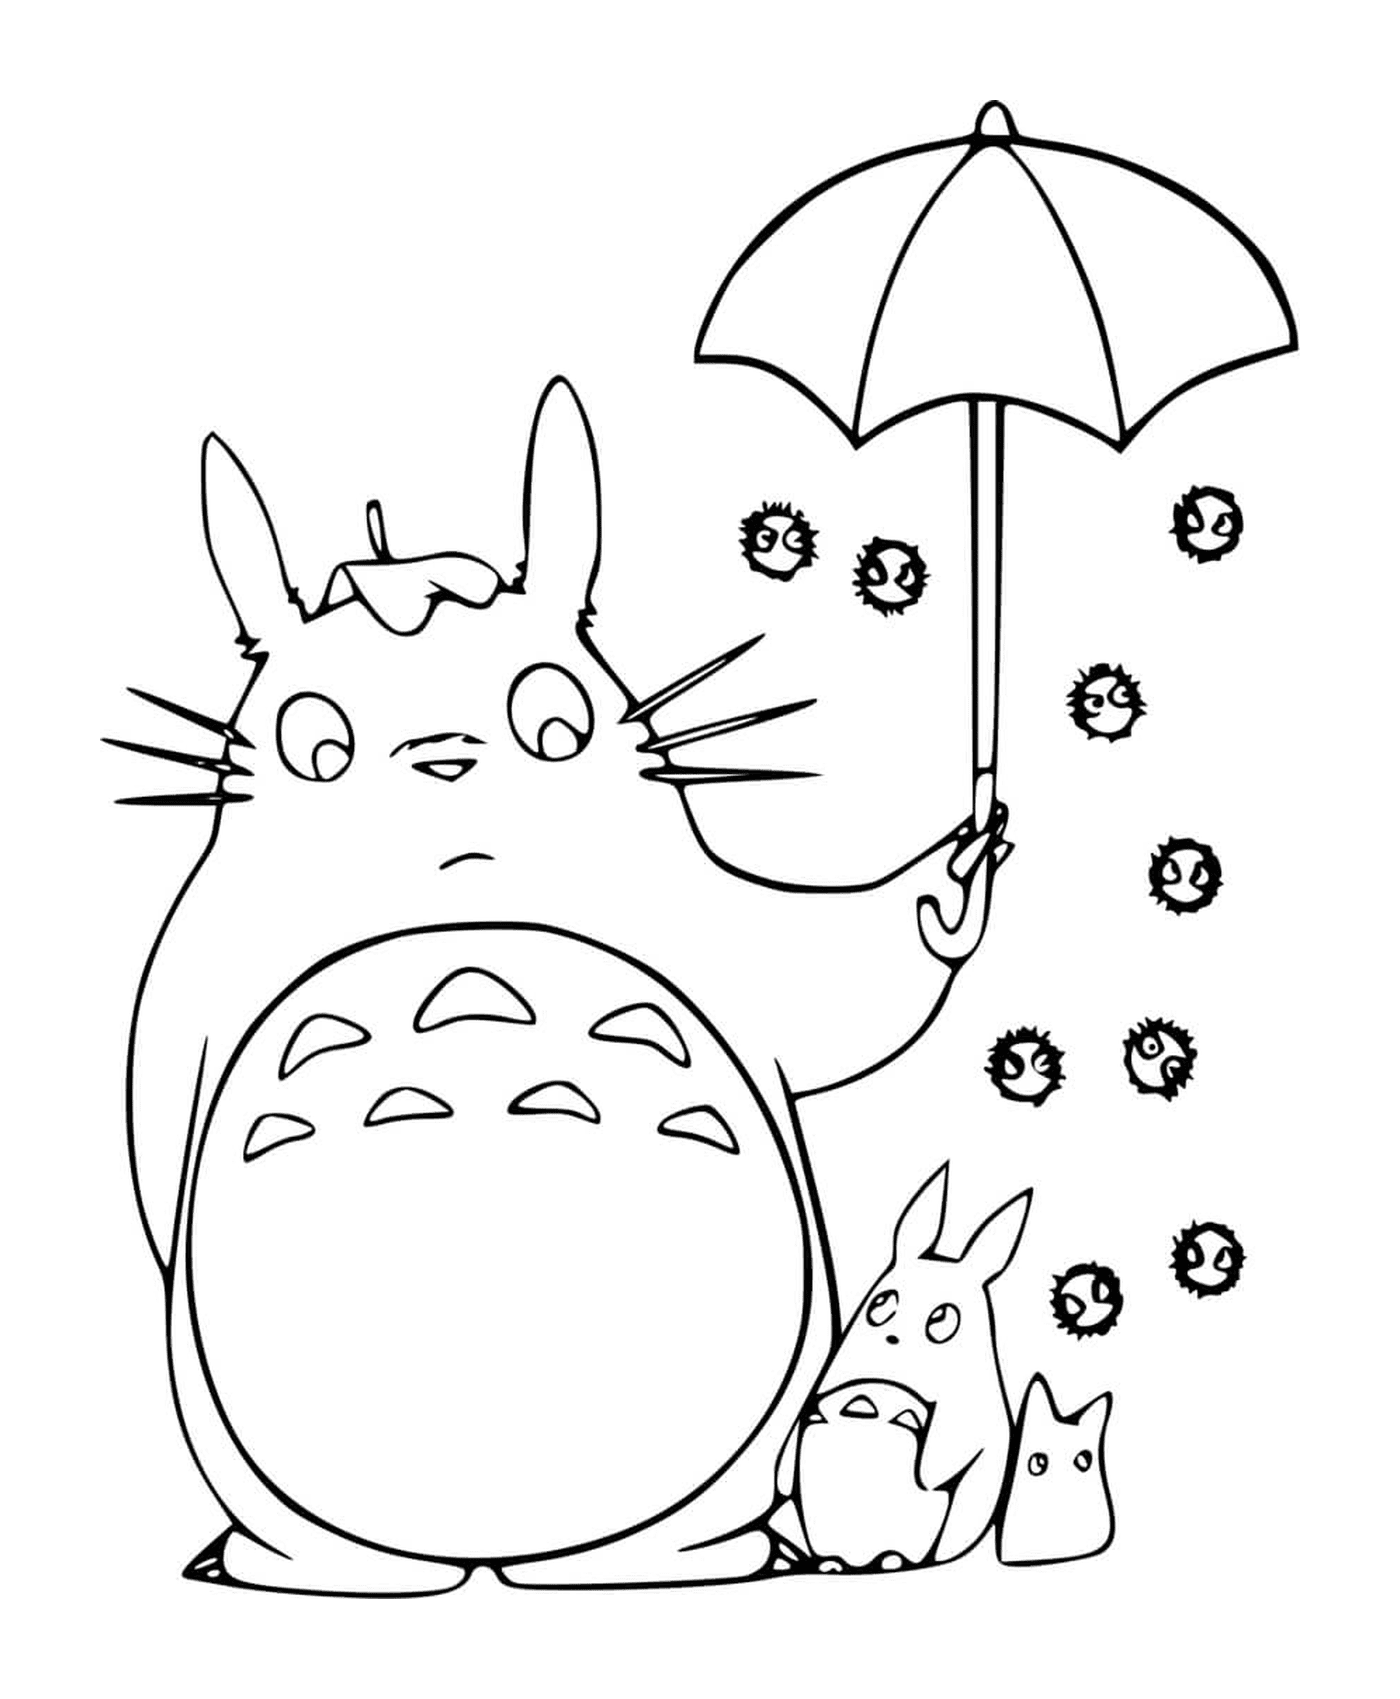   Totoro tenant un parapluie ouvert avec un enfant 